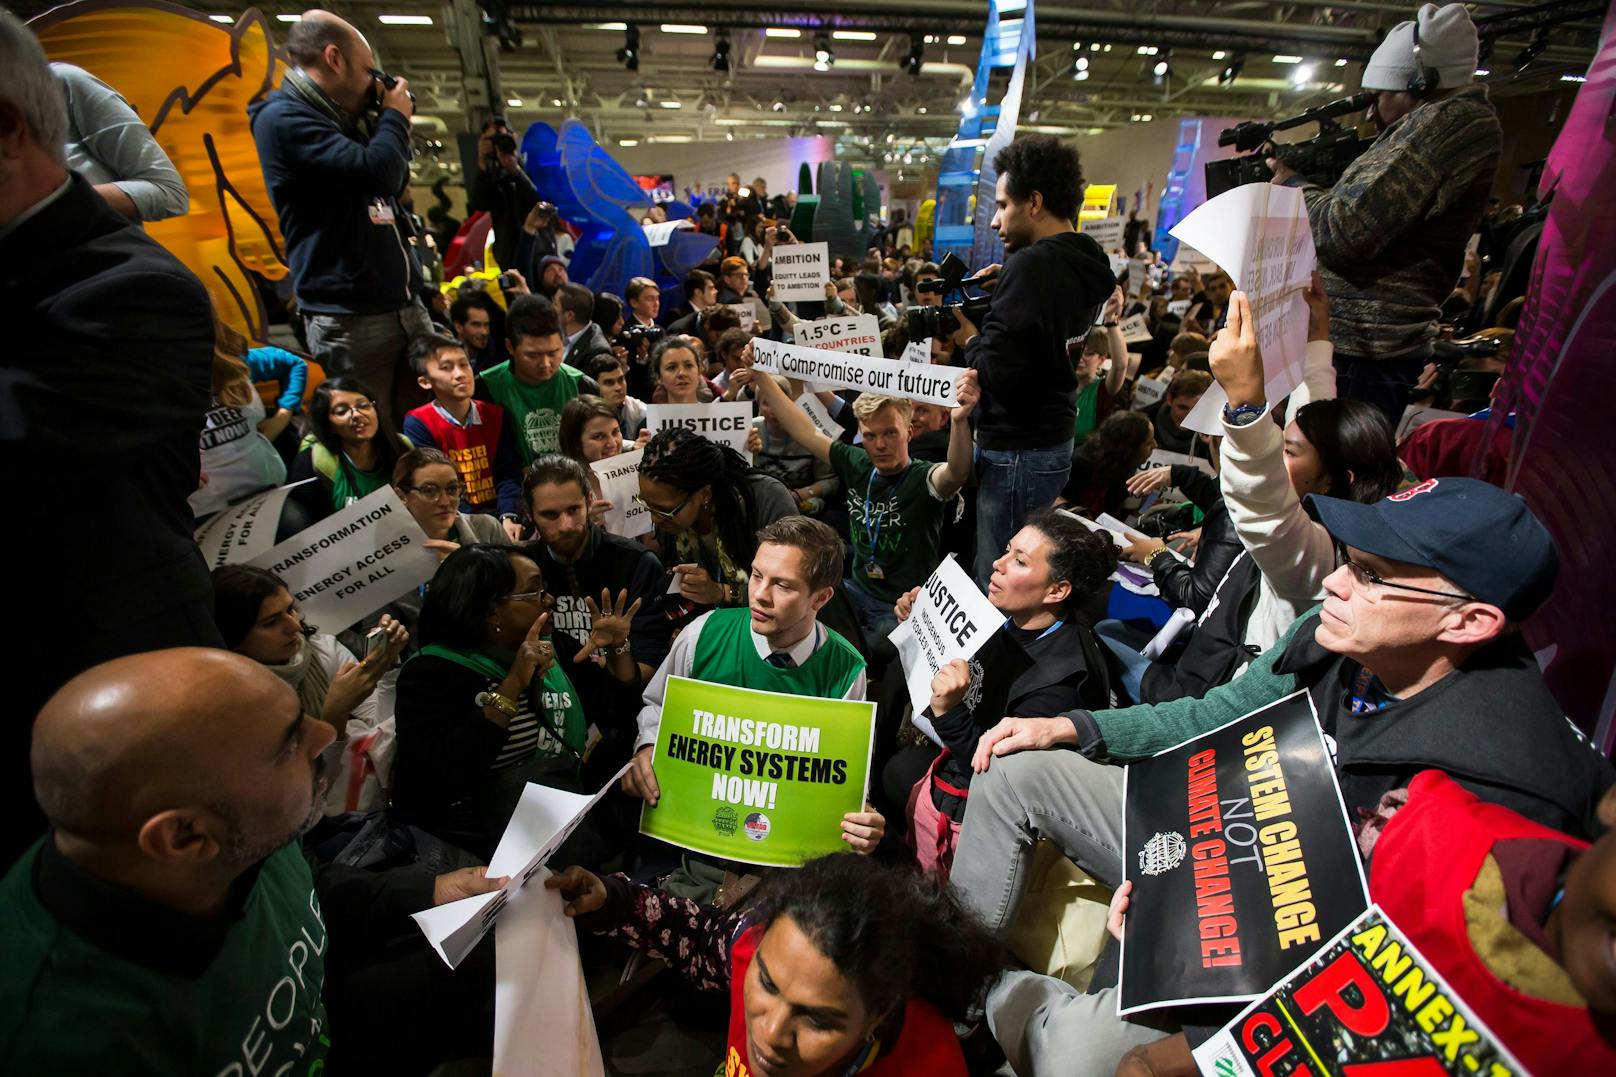 NGO-Vertreter und Aktivisten demonstrieren am Eingang der Plenarsitzung in Le Bourget, nördlich von Paris. Die 21. Vertragsstaatenkonferenz (COP21) fand im Dezember 2015 in Paris statt, um ein internationales Abkommen zur Begrenzung der Treibhausgasemissionen und zur Eindämmung des Klimawandels zu erzielen.